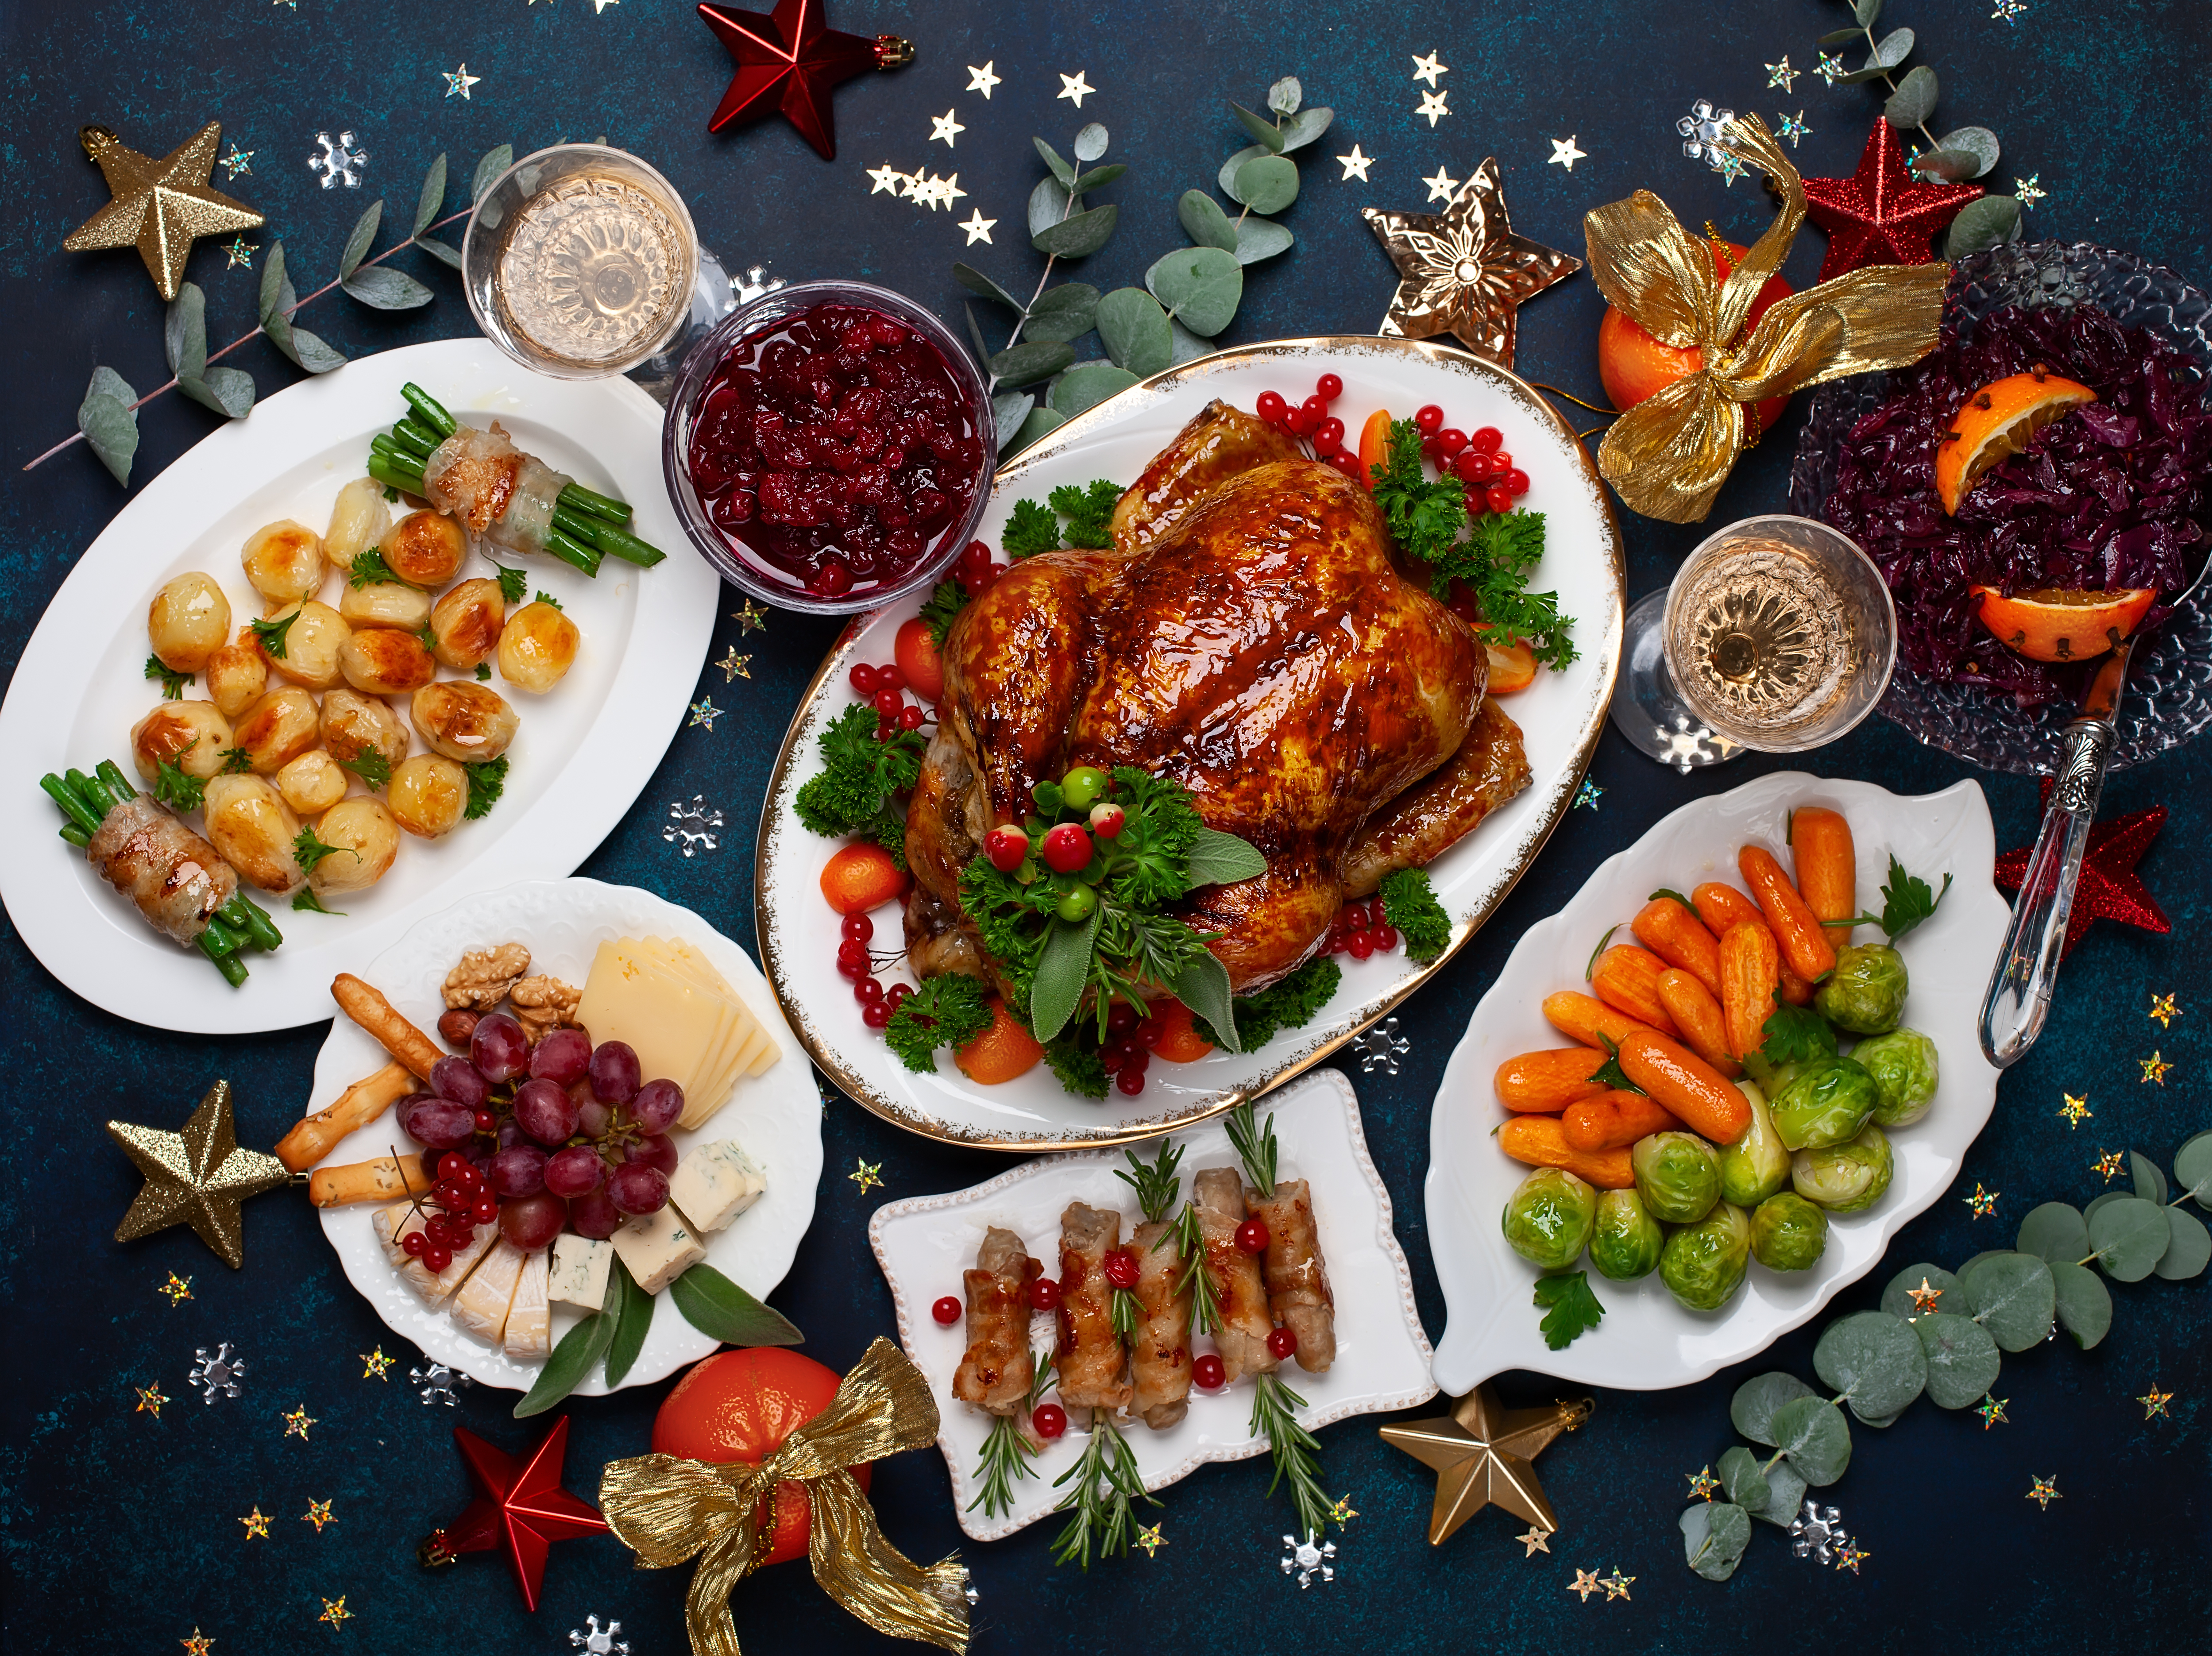 Un repas de Noël sur une table décorée | Source : Shutterstock